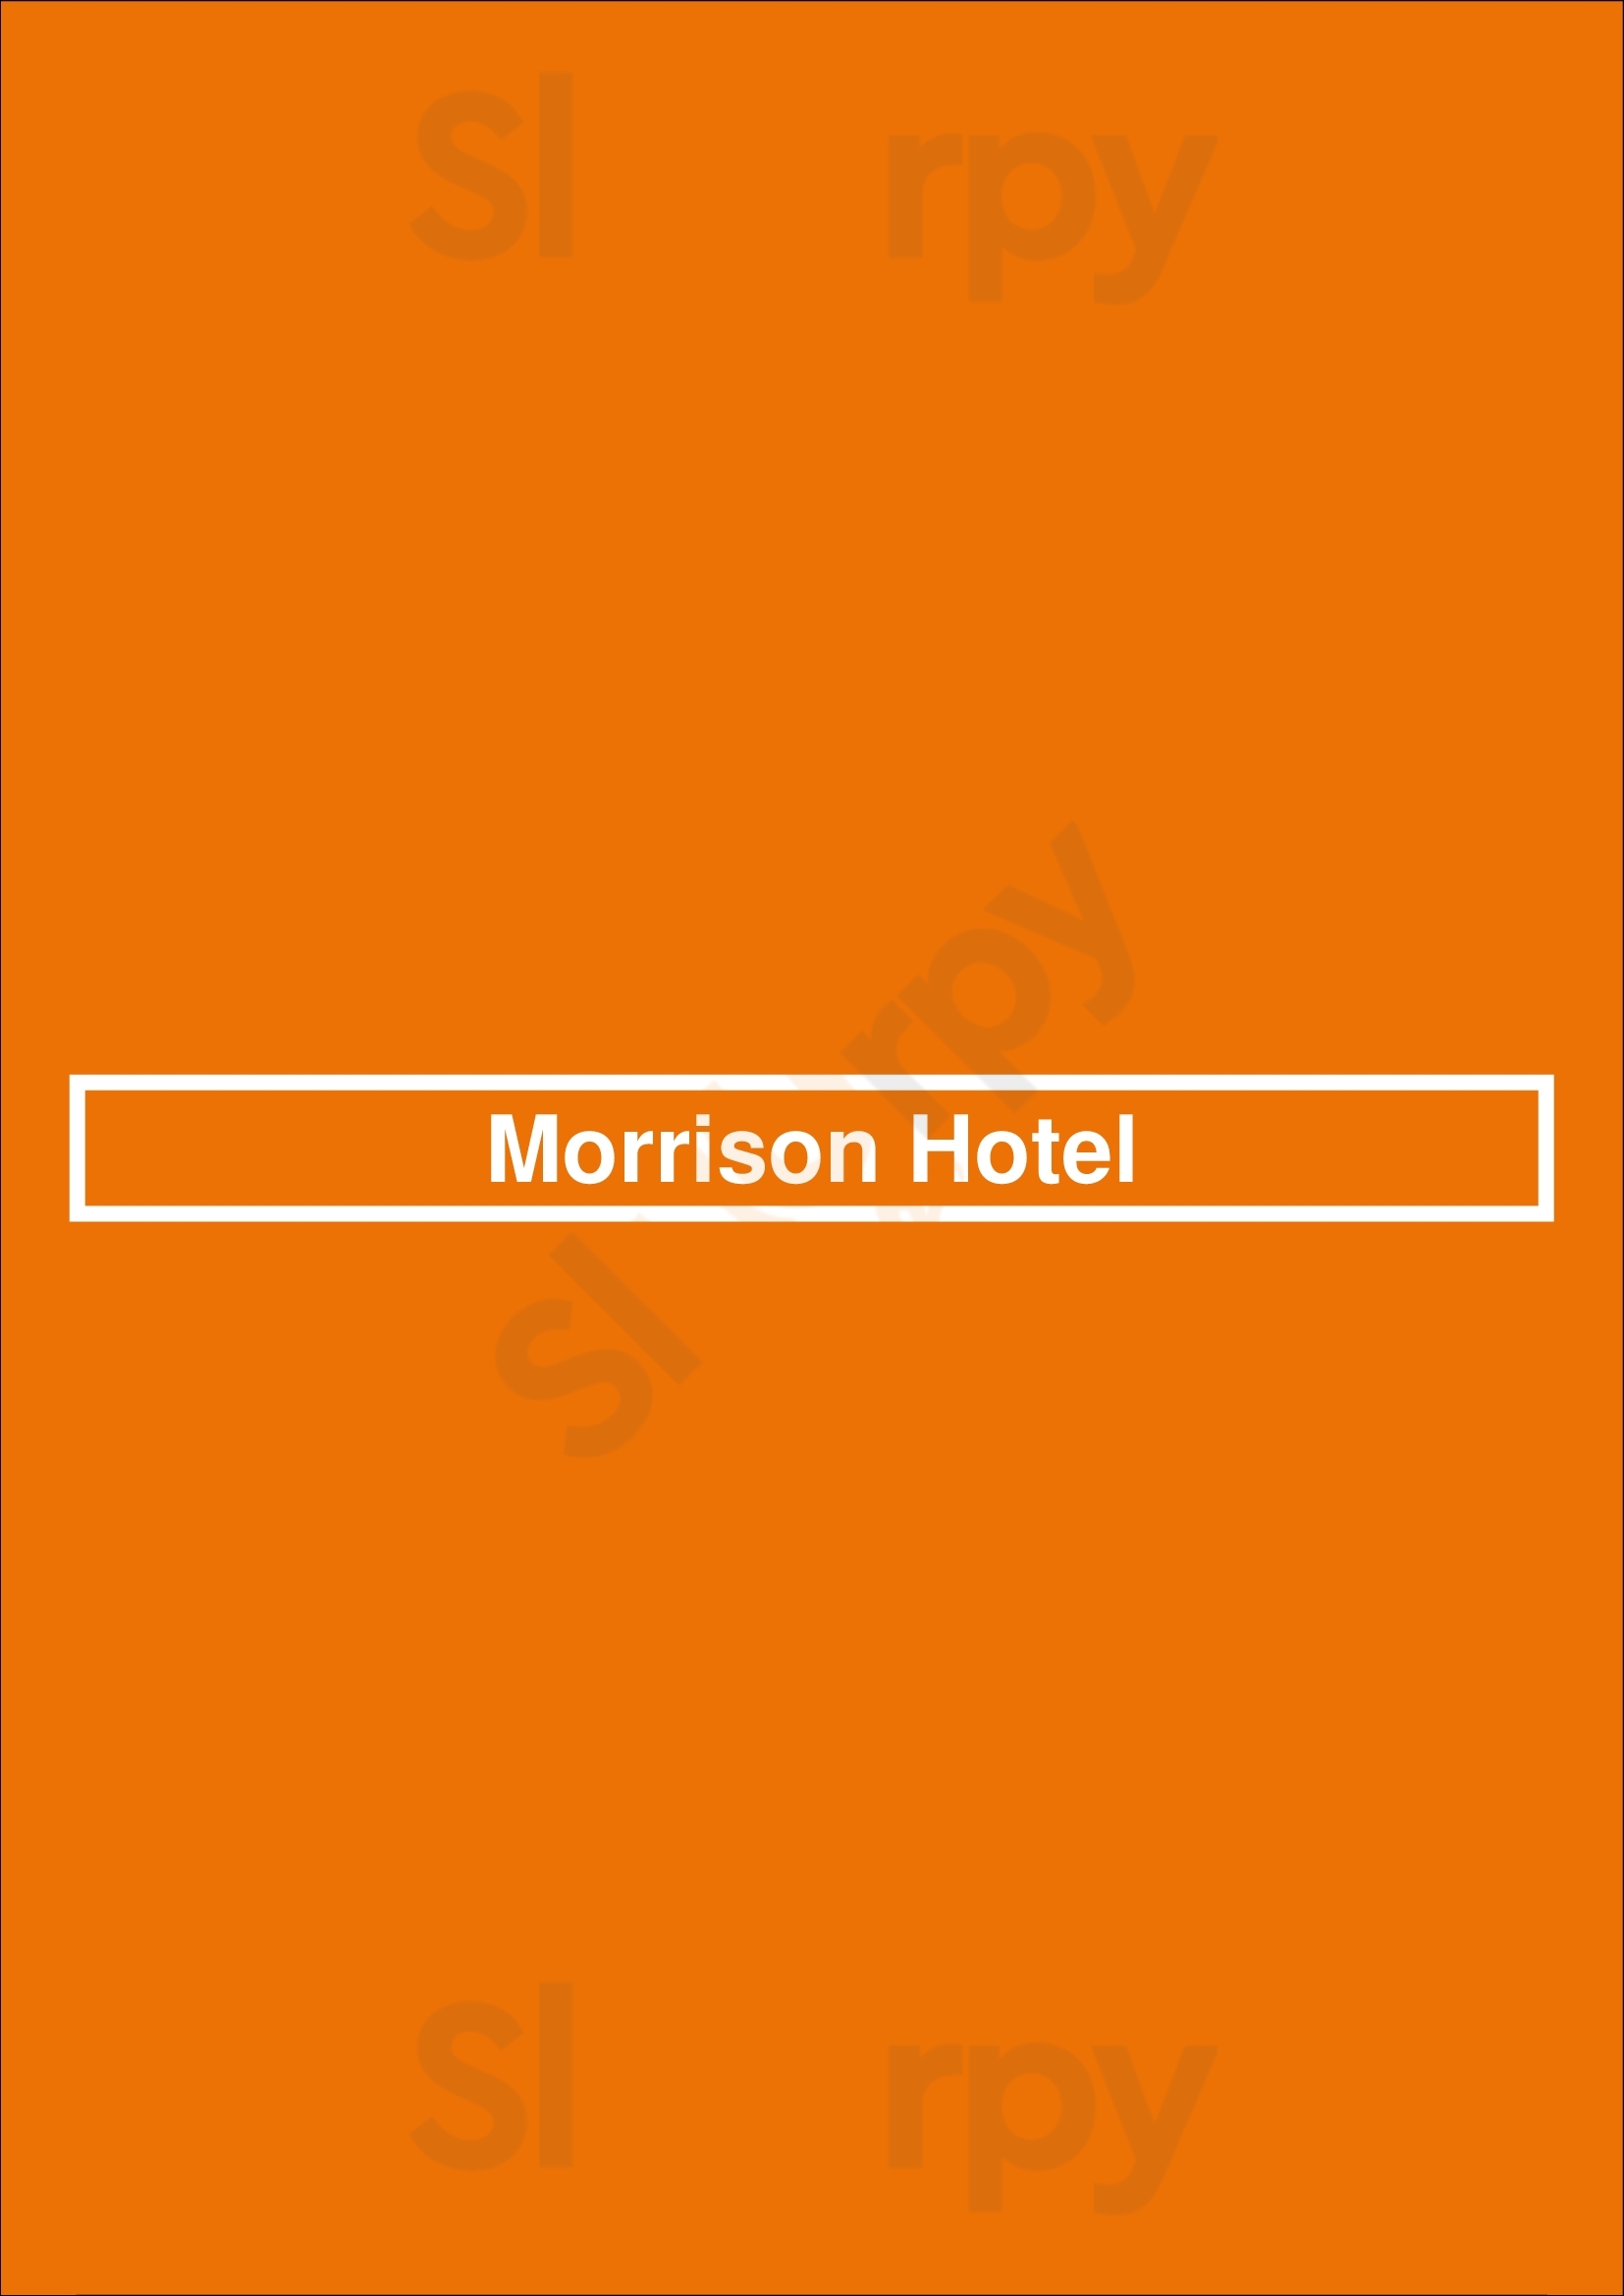 Morrison Hotel Brisbane Menu - 1